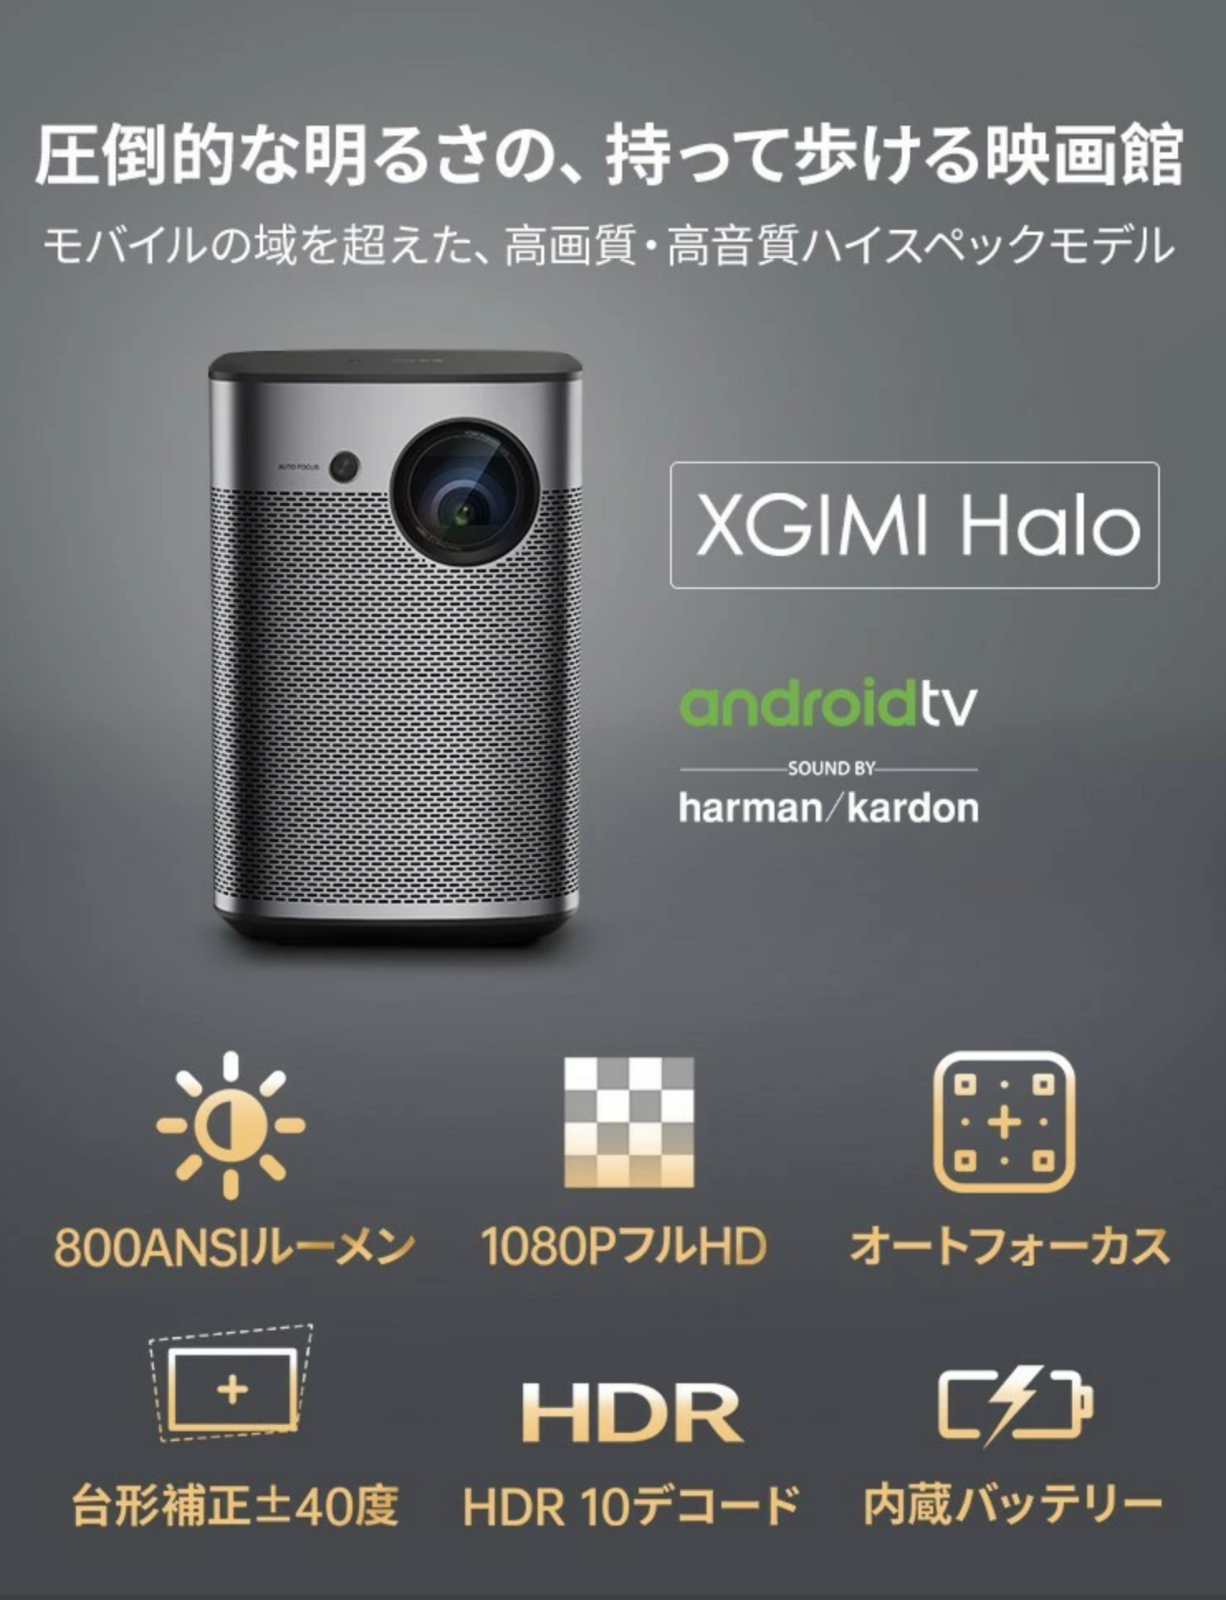 低価新作登場モバイルプロジェクター 高輝度 800ANSI ルーメン フルHD 1080p Android TV 9.0搭載 オートフォーカス bluetooth対応 XGIMI Halo 本体